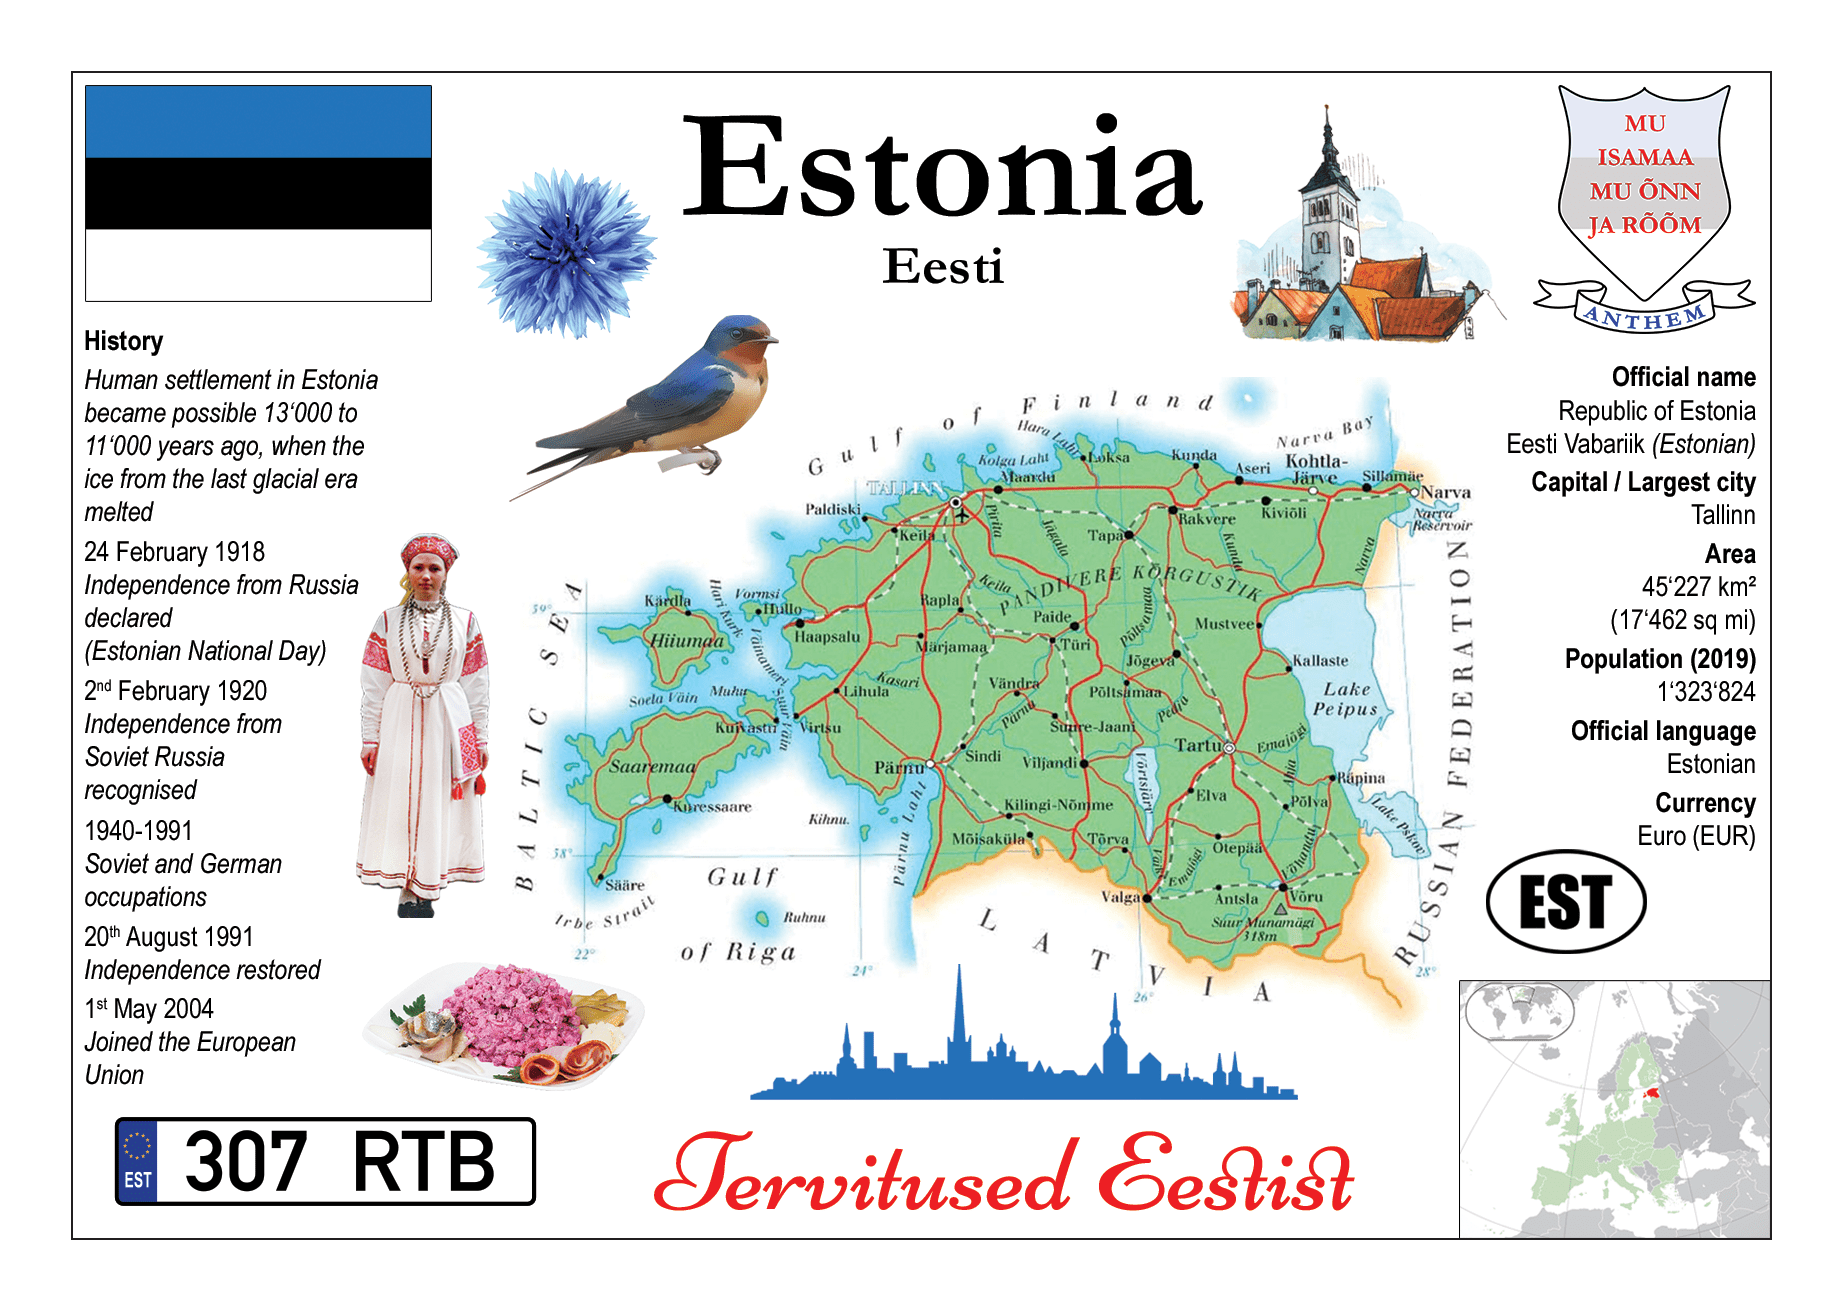 Europe, Estonia MOTW